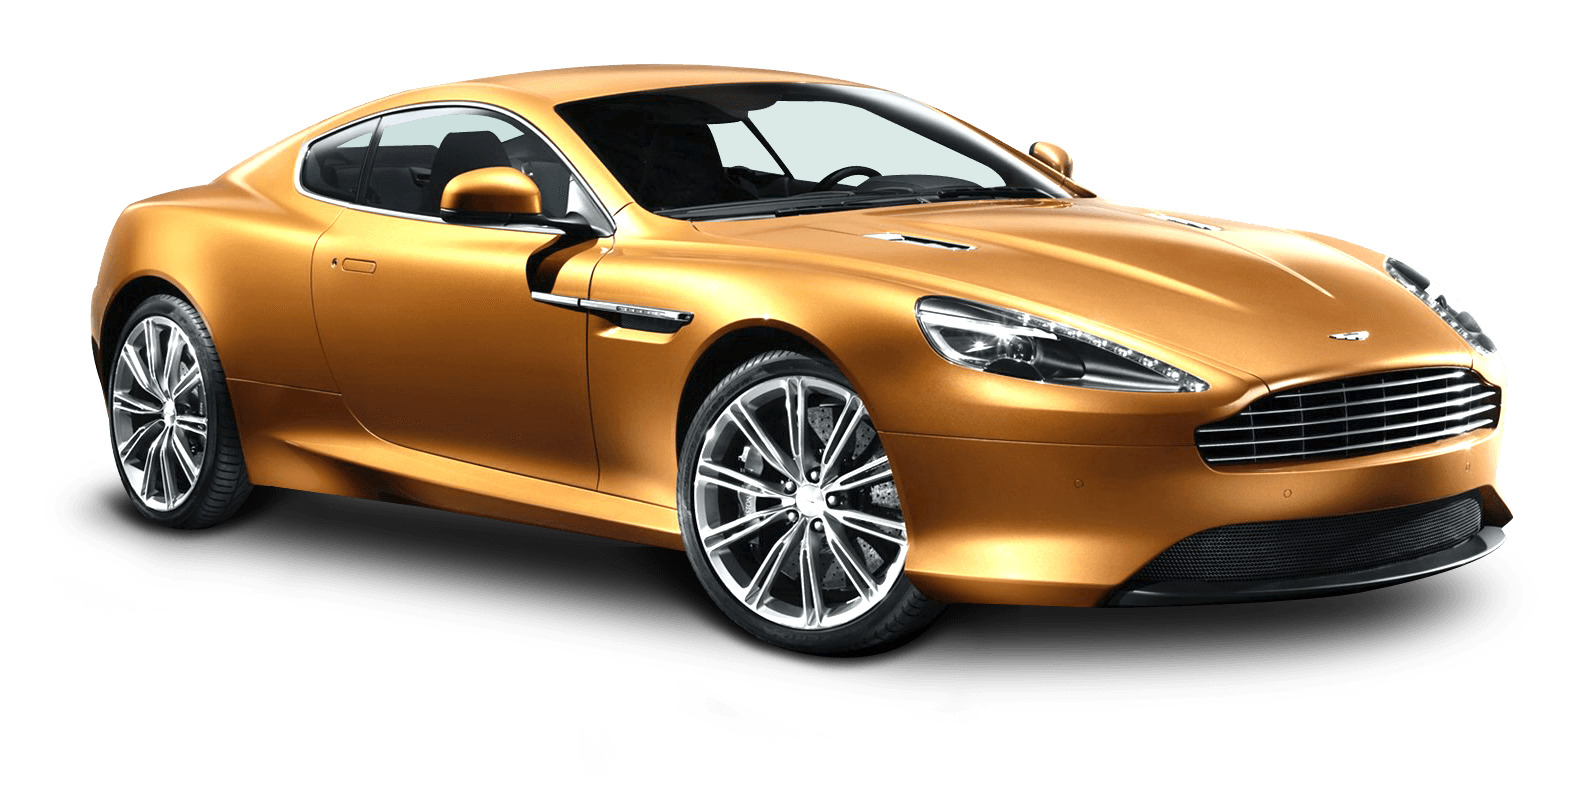 Gold Aston Martin icons